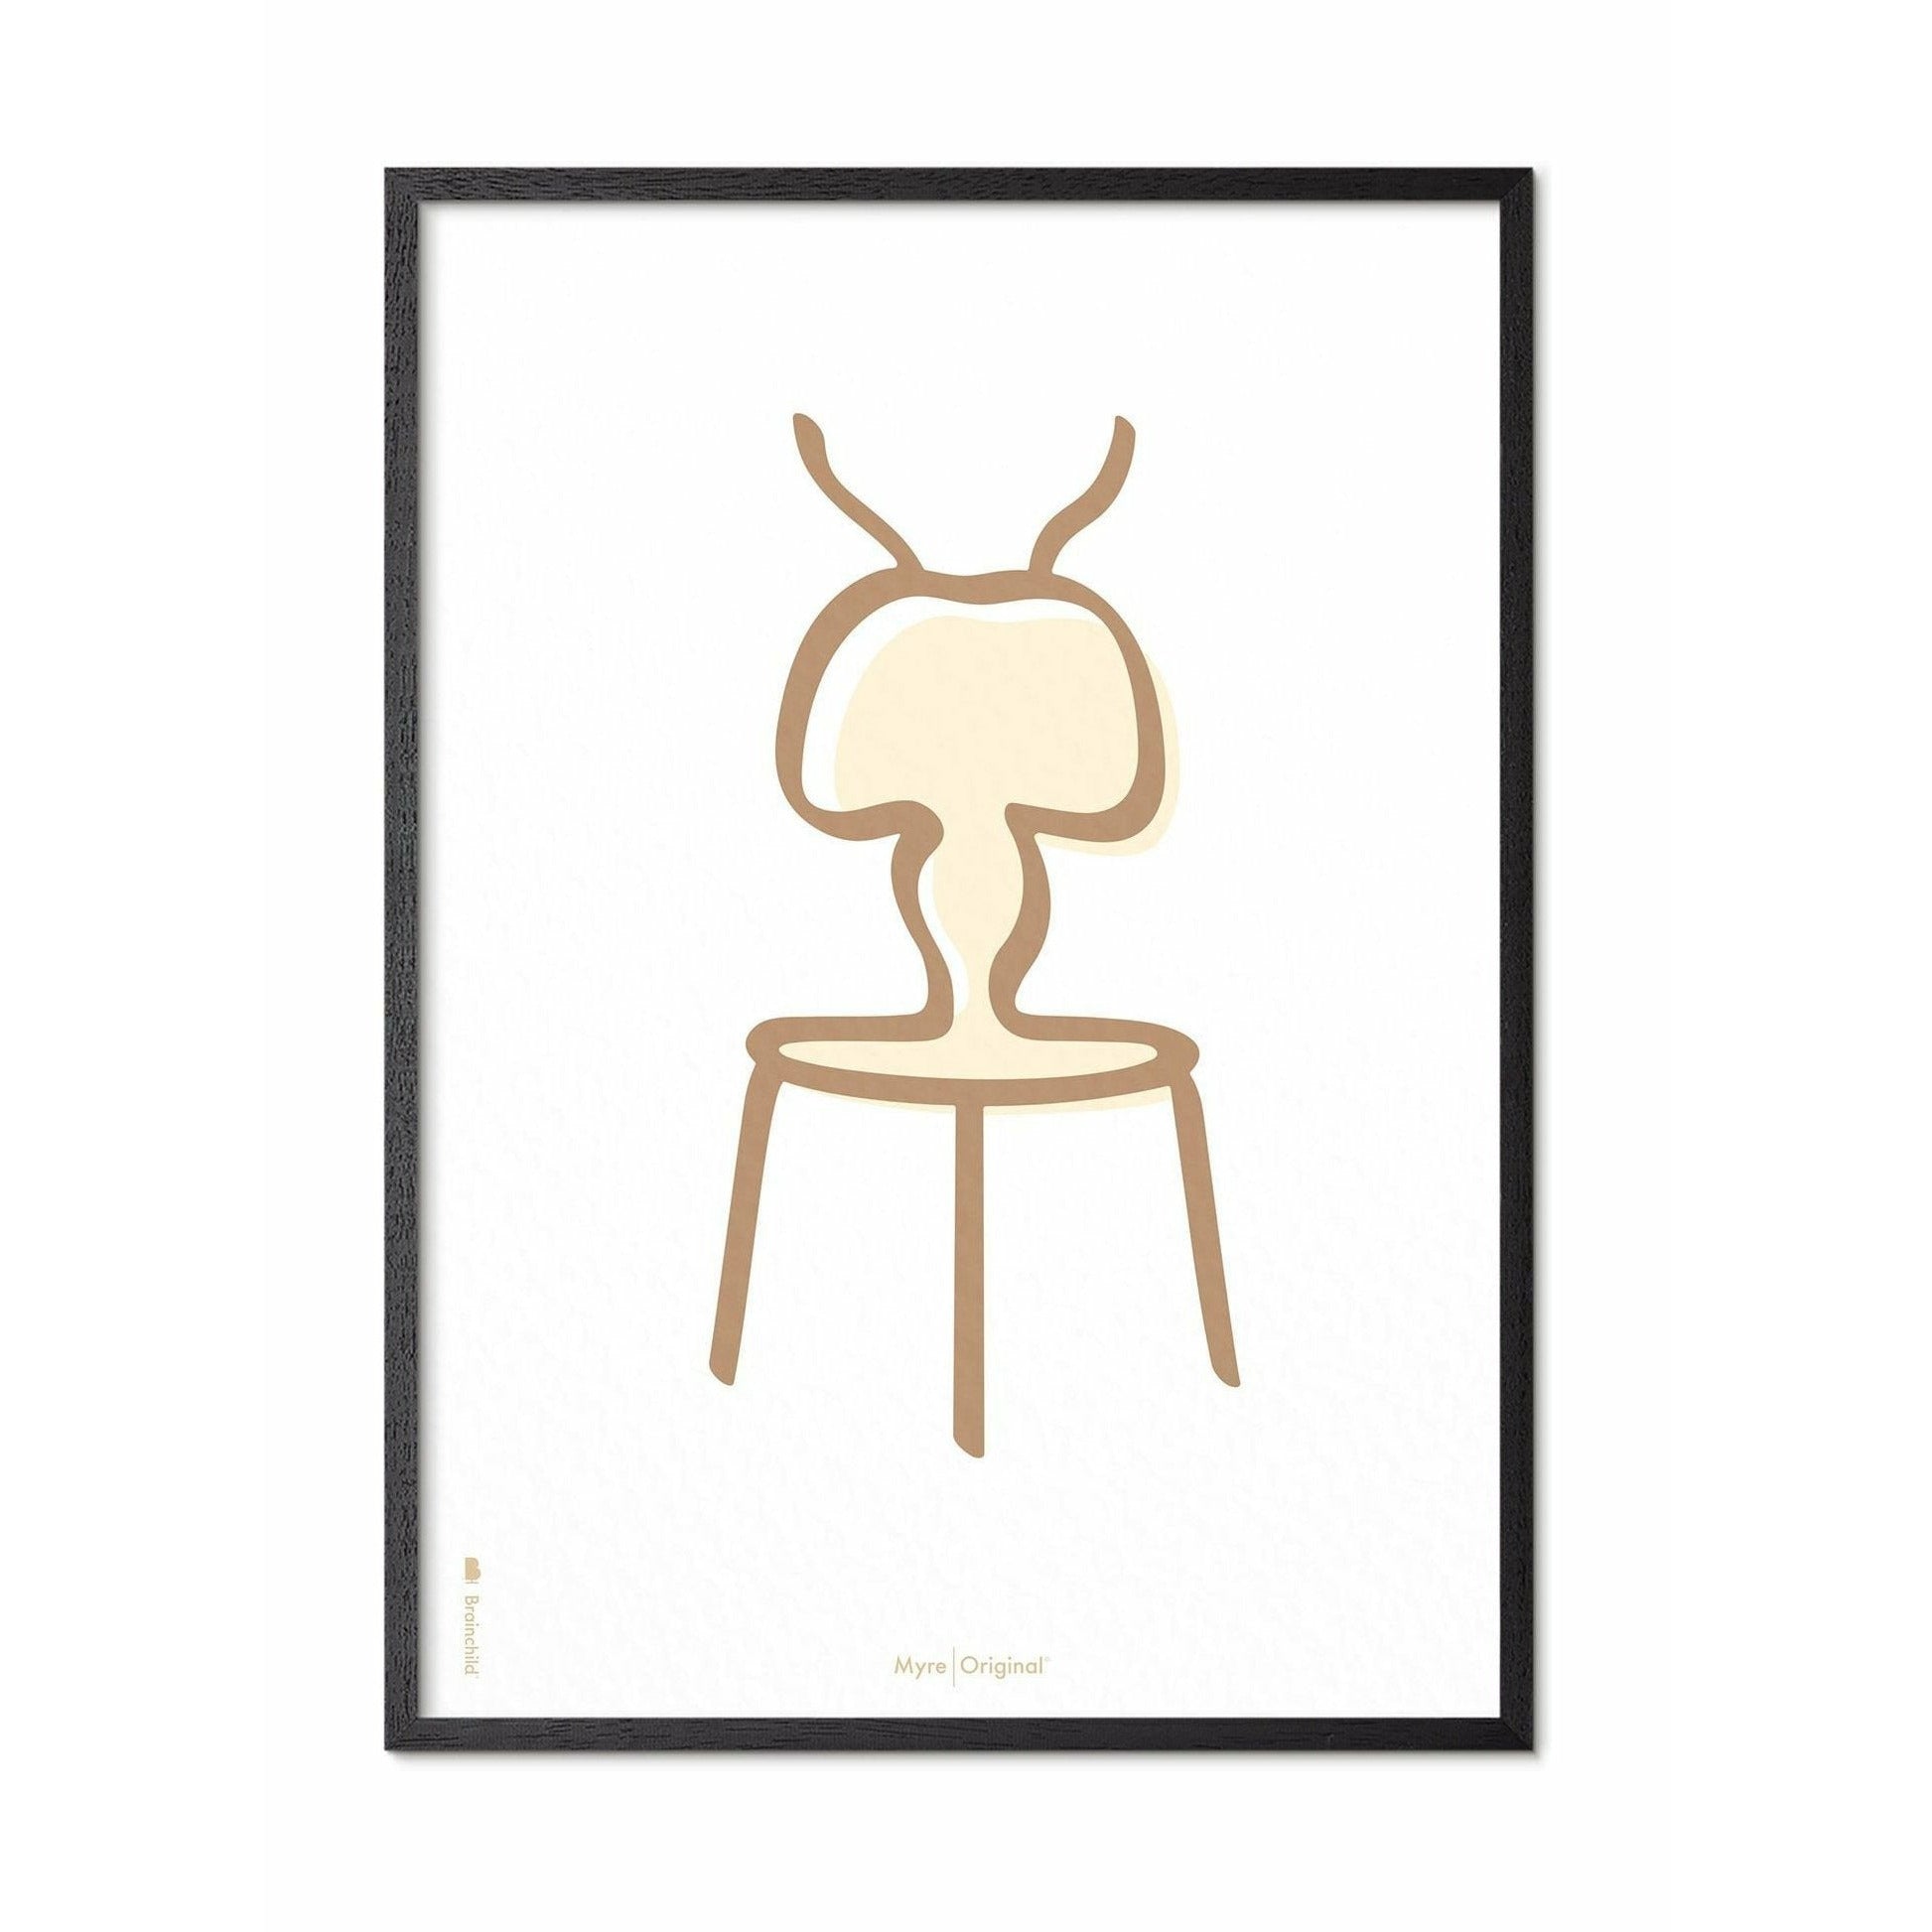 Plakát Ant Line Brainchild, rám v černém lakovaném dřevu 50x70 cm, bílé pozadí